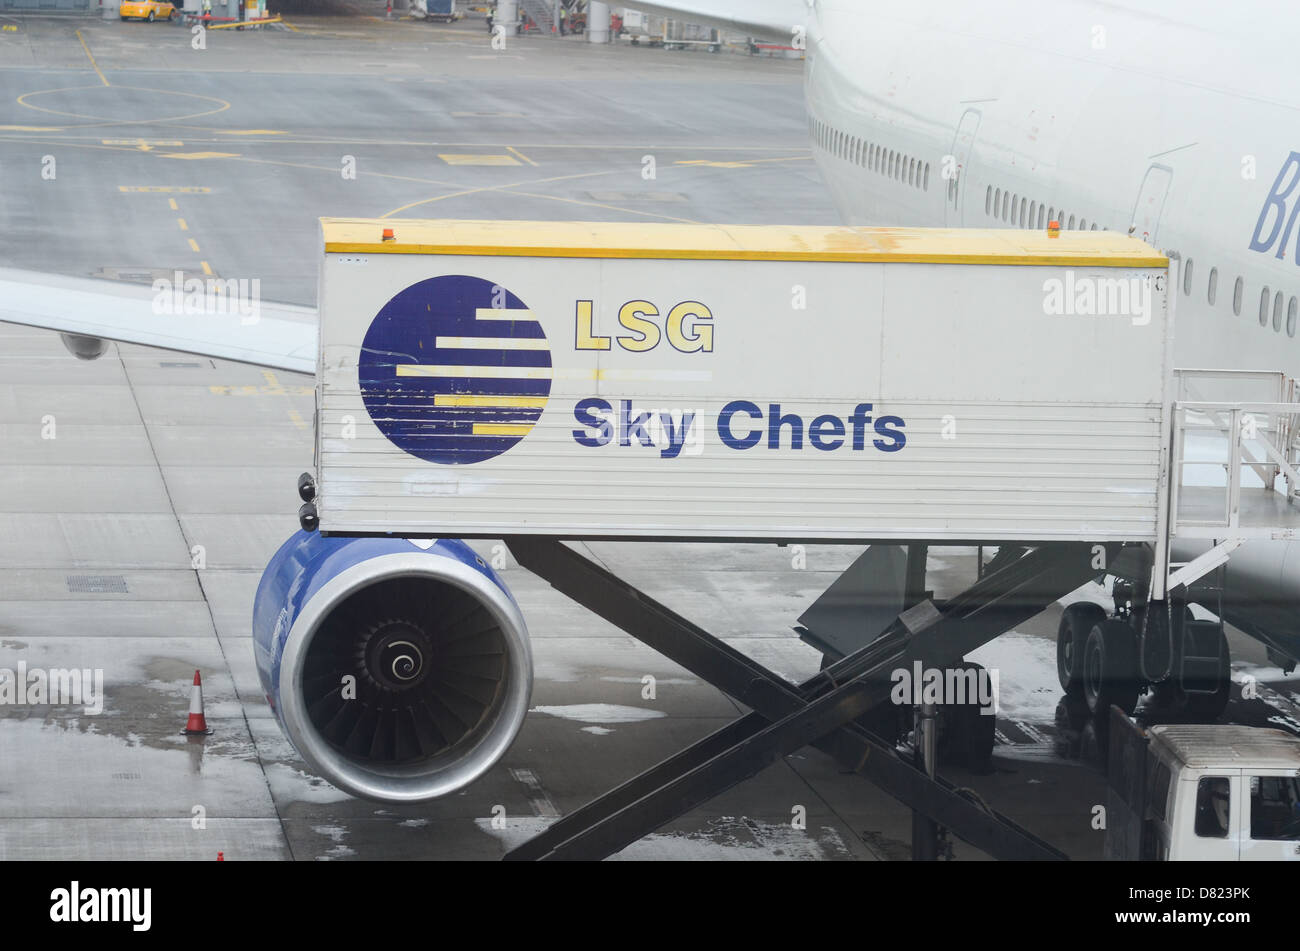 LSG Sky Chefs, der weltweit größte Anbieter von Bordverpflegung. Stockfoto